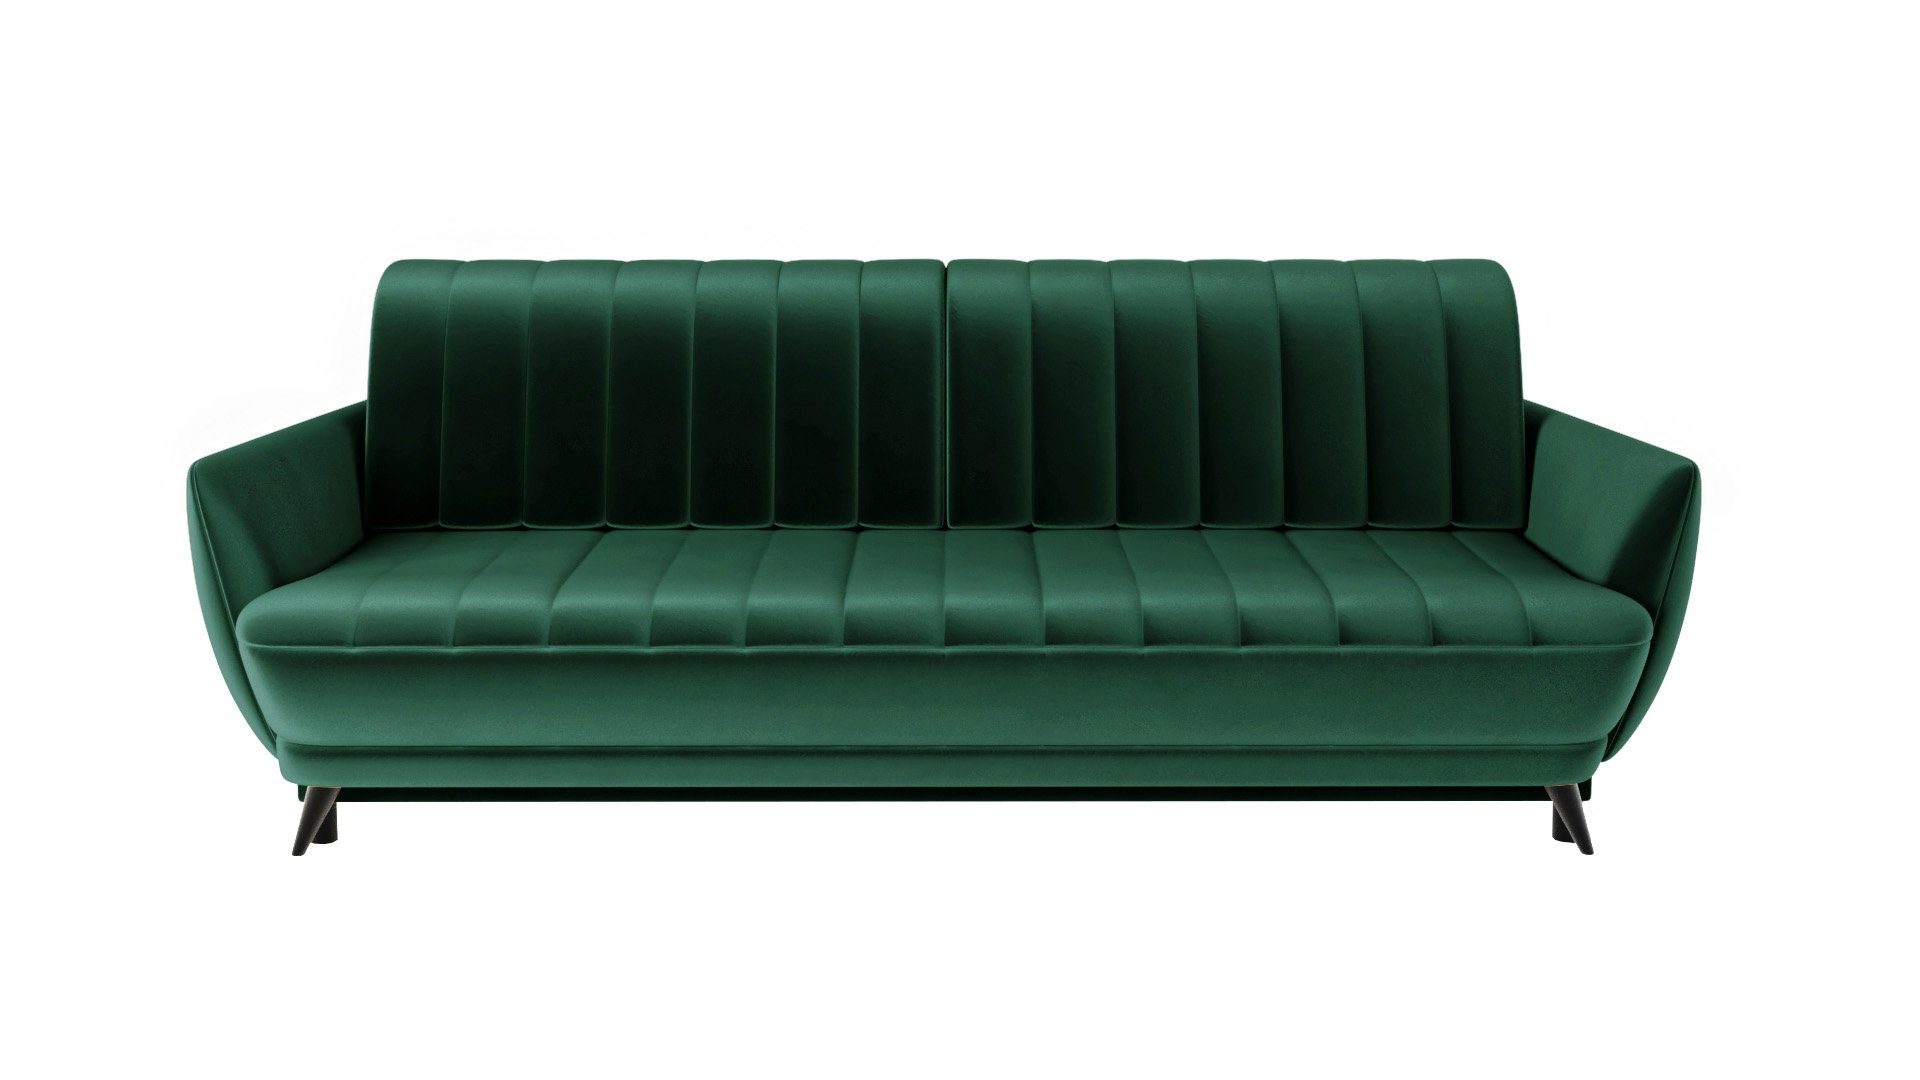 Dreisitziges - Wohnzimmer - Sofa Sofa Elegantes 3 Siblo Sofa 3-Sitzer Rolo 3-Sitzer - bequemes Grün modernes